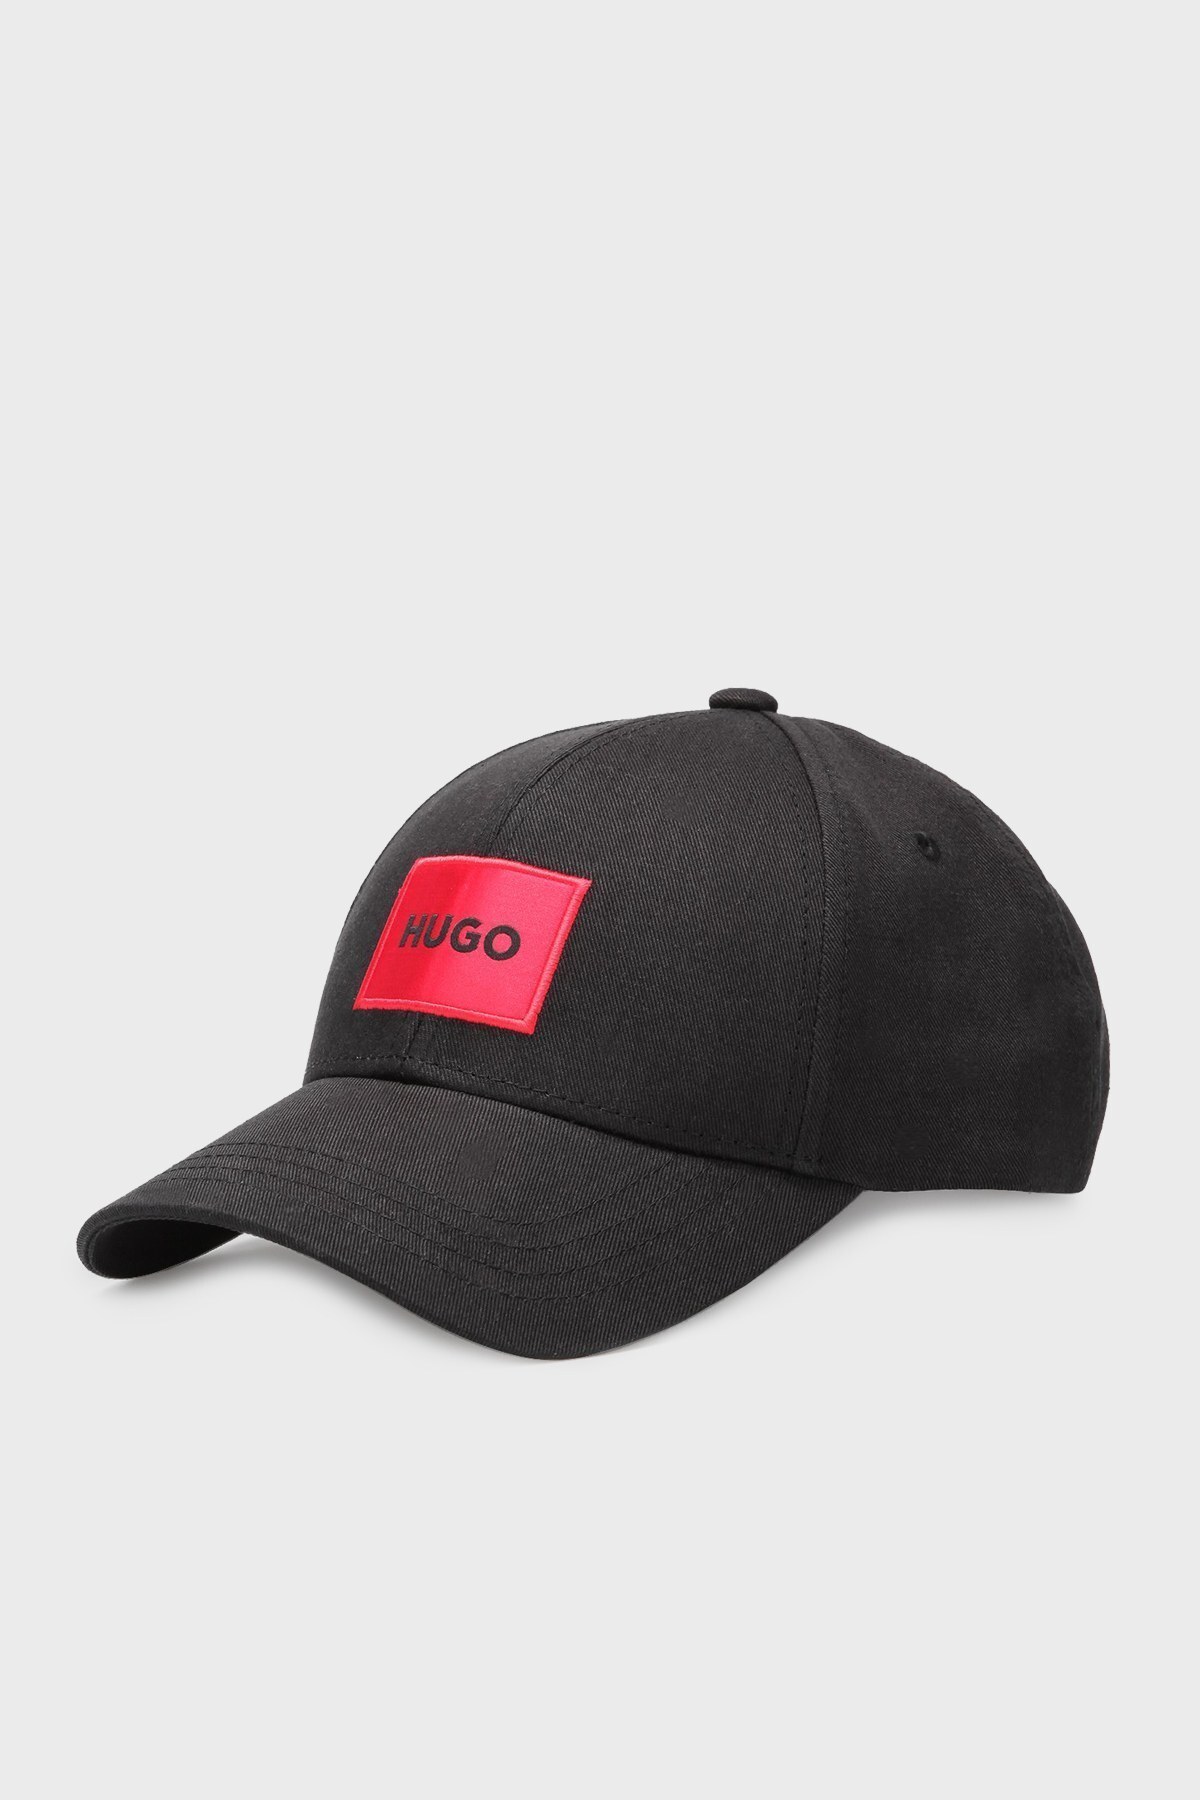 Hugo Pamuklu Logolu Erkek Şapka 50468754 001 SİYAH